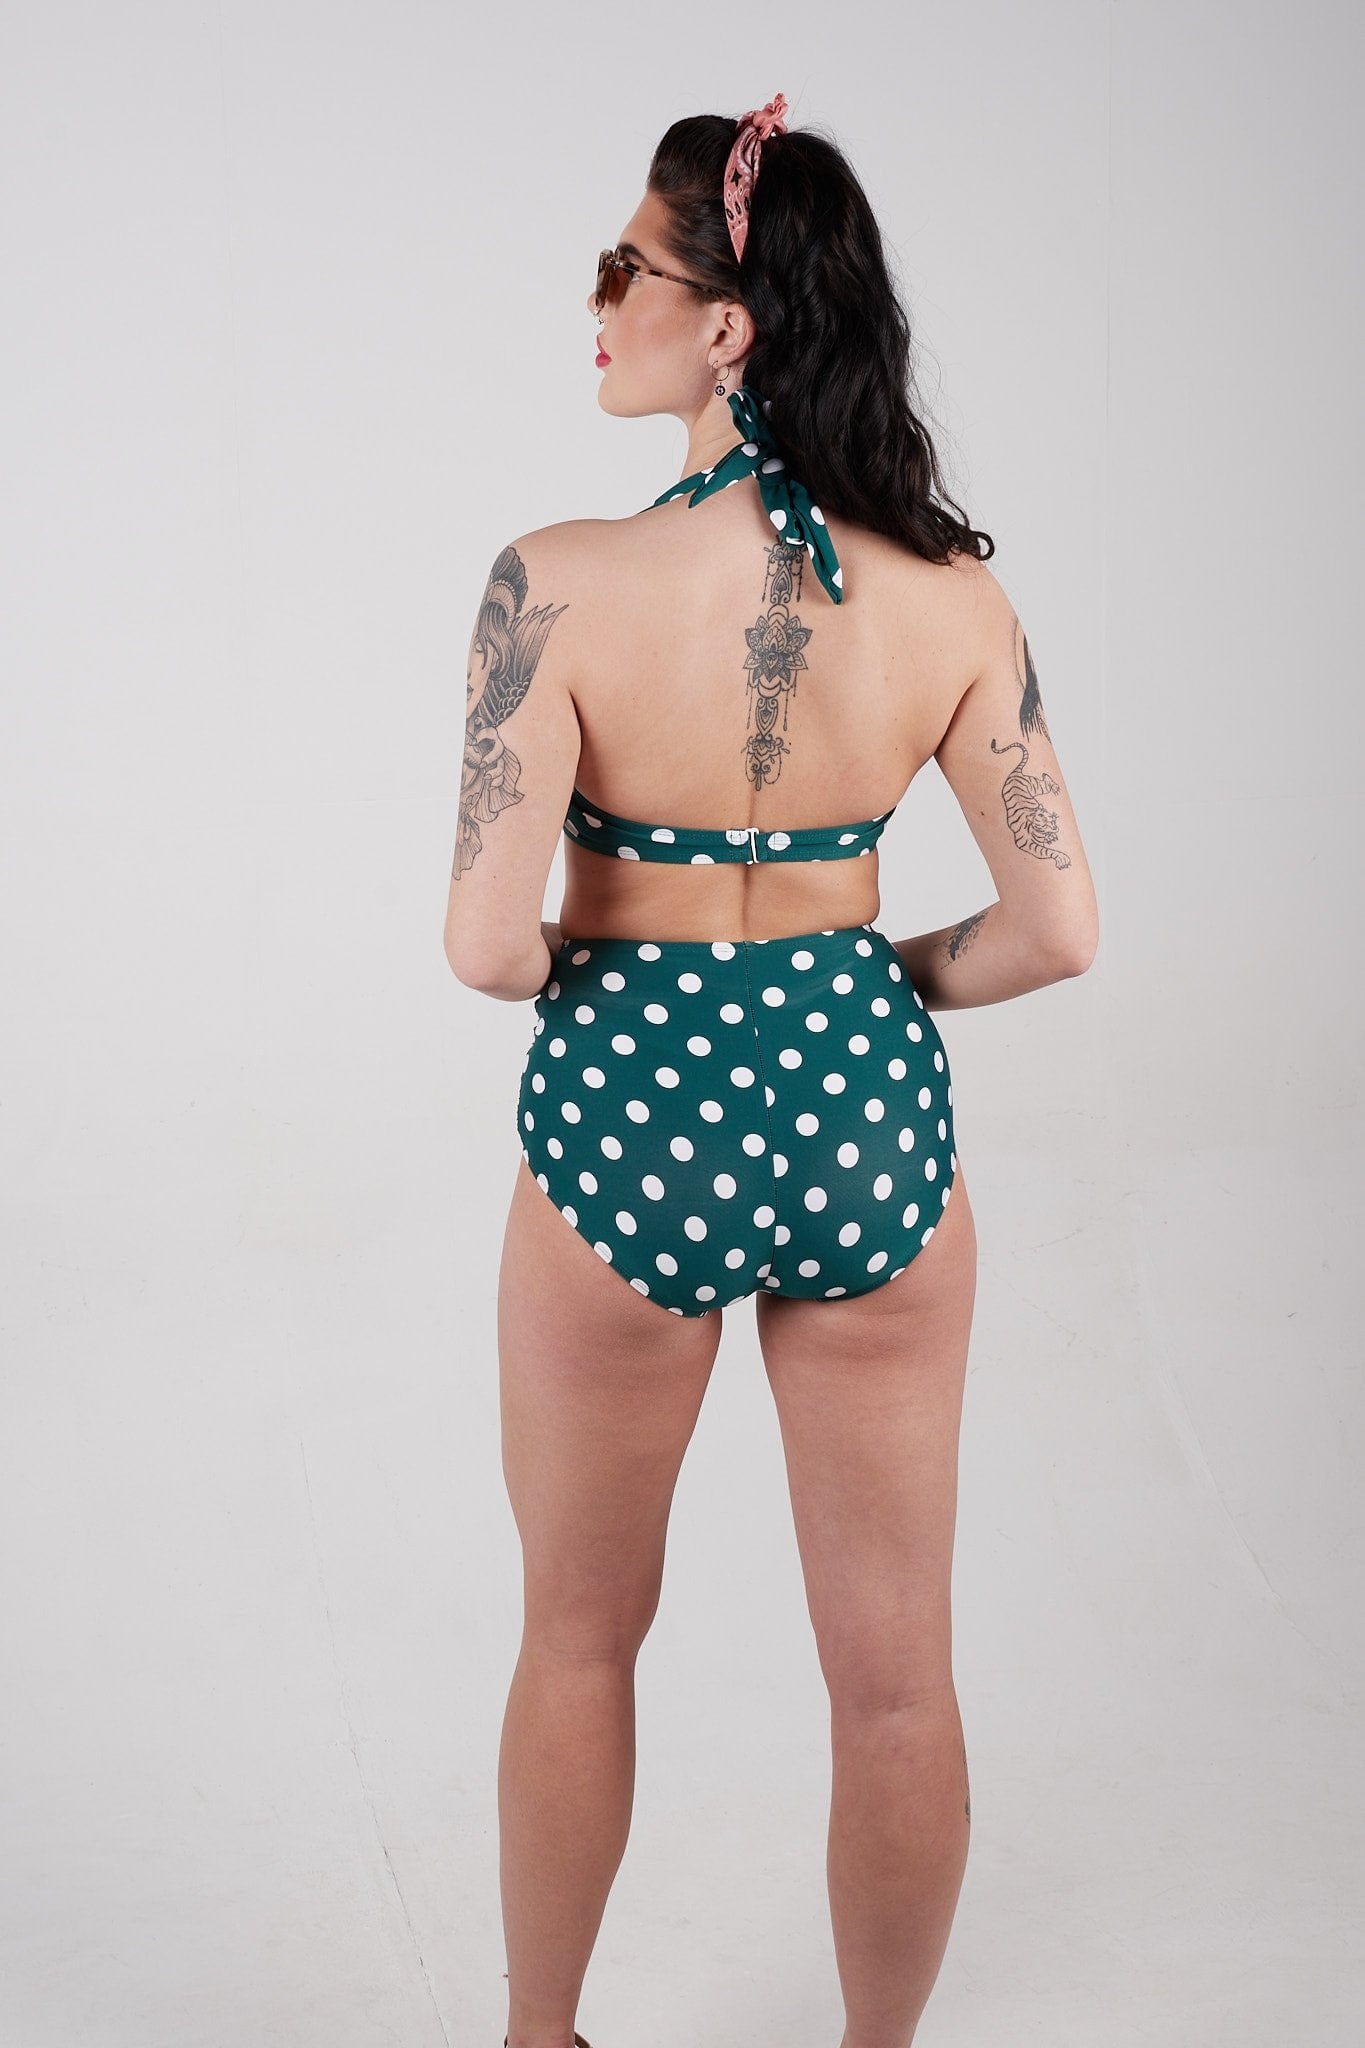 BettyliciousUK Bikini Bottoms Esther Williams Green Polka Dot High Waist Bikini Bottoms with Tummy Control